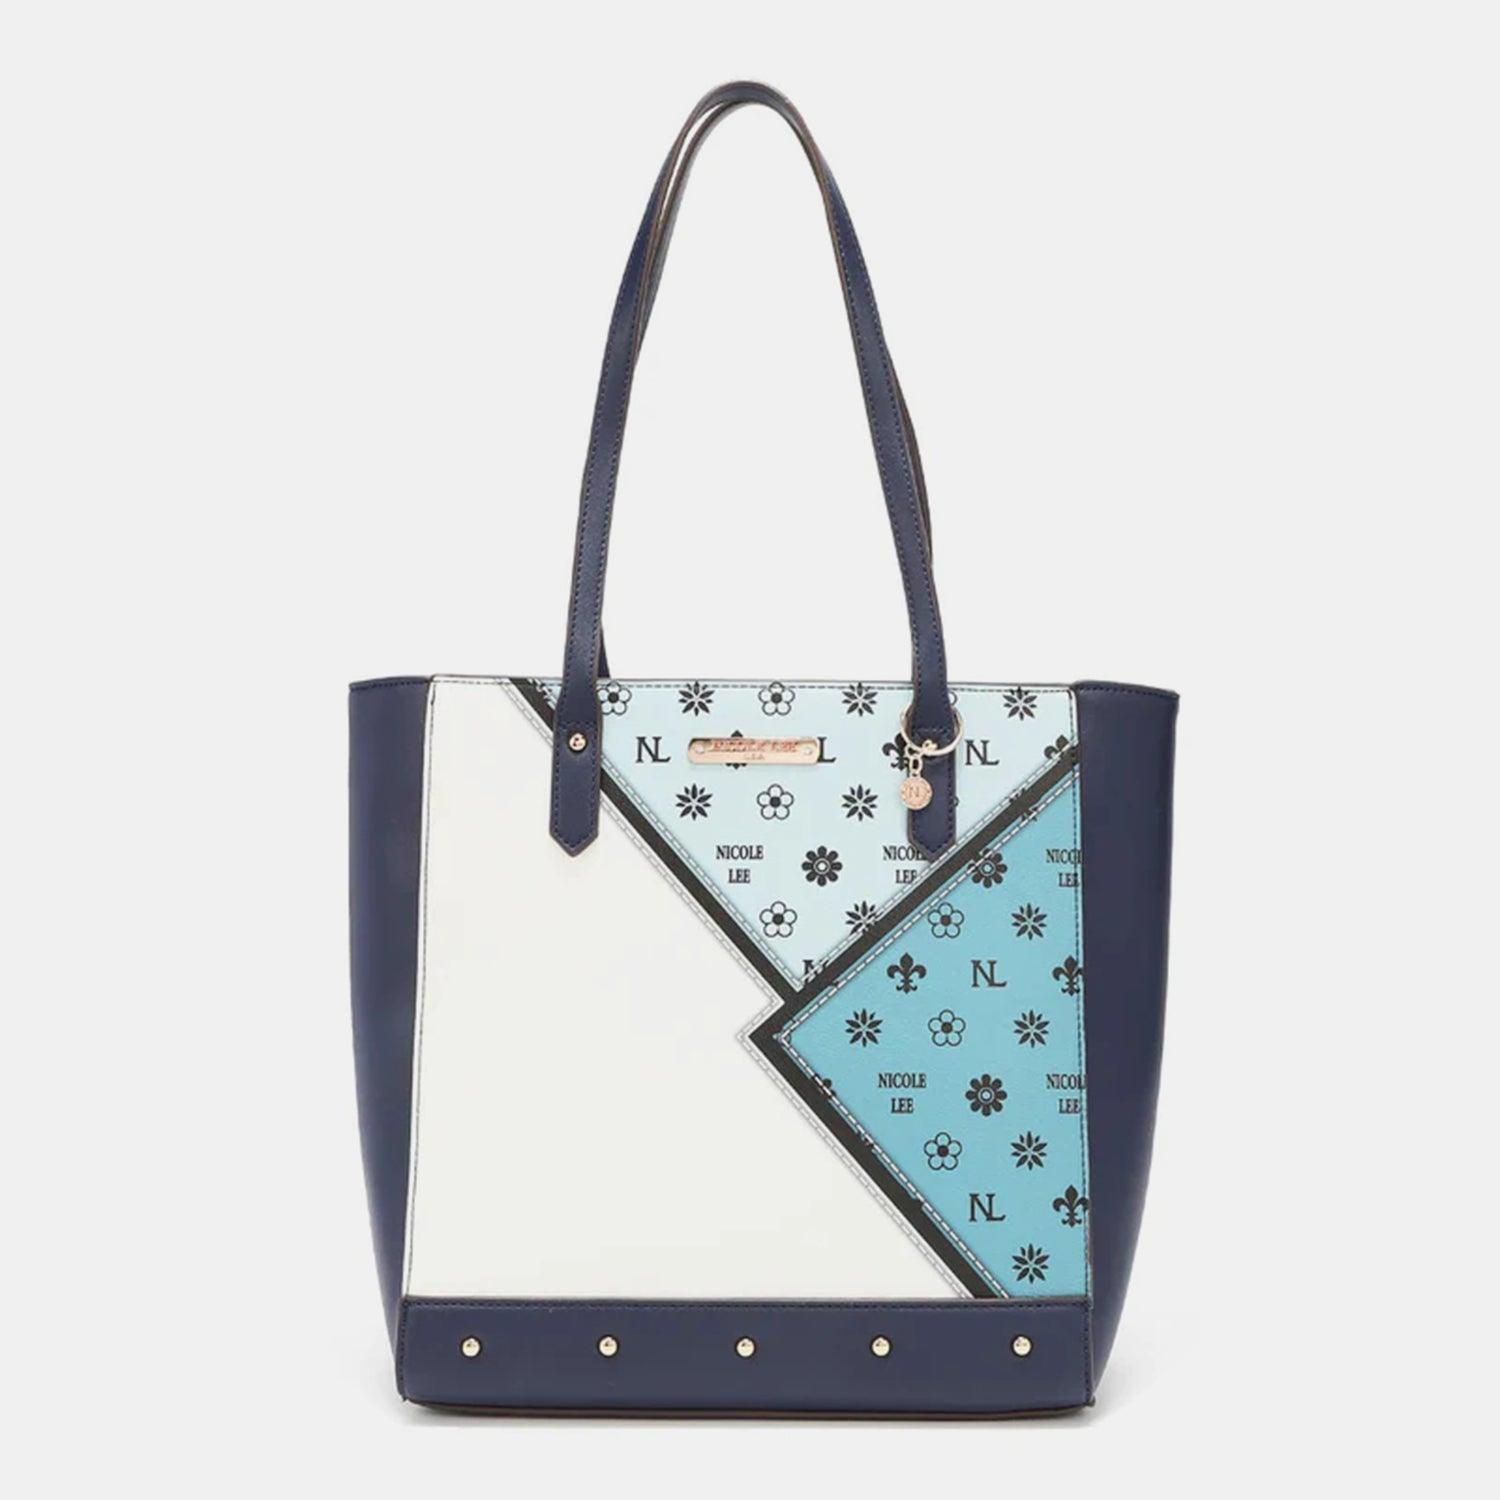 a handbag with a blue and white design